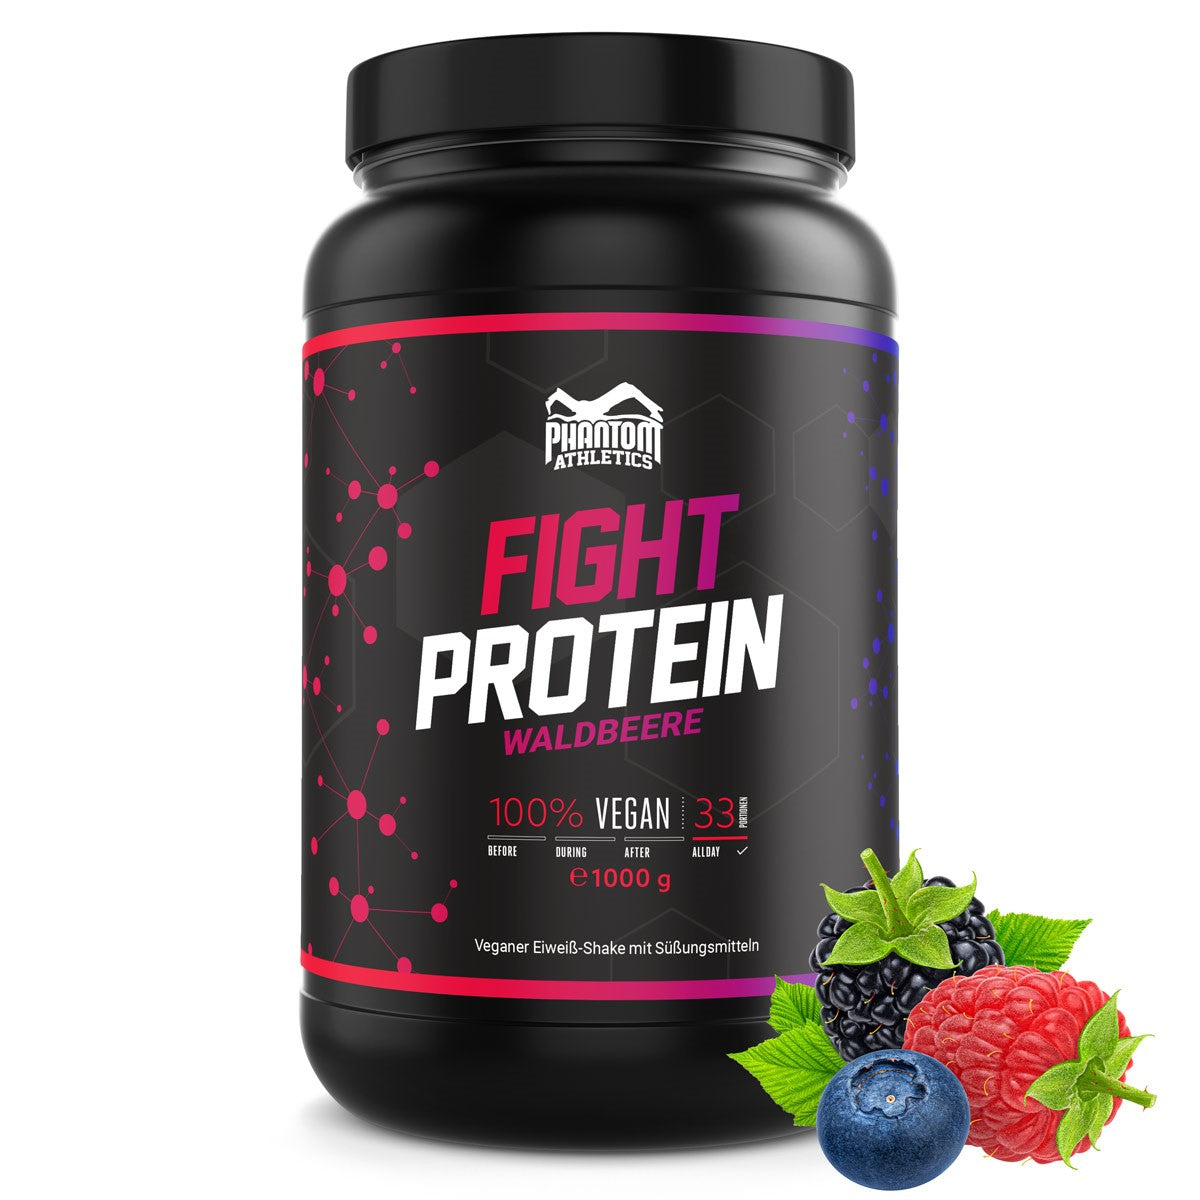 Fight protein - wild berry - 1000g